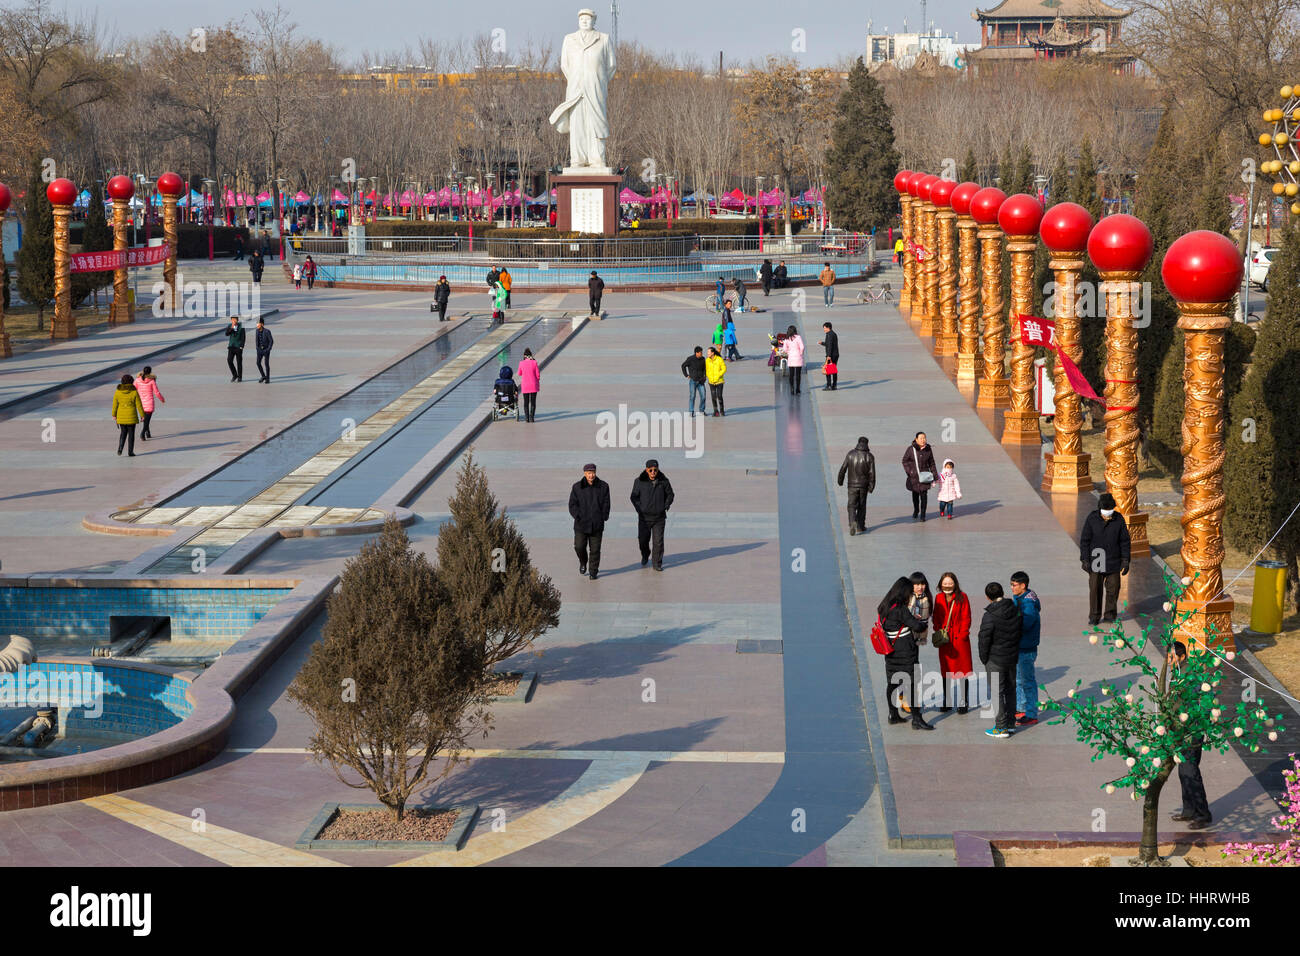 Le président Mao statue, la Place du Peuple, Zhongwei, province de Ningxia, Chine Banque D'Images